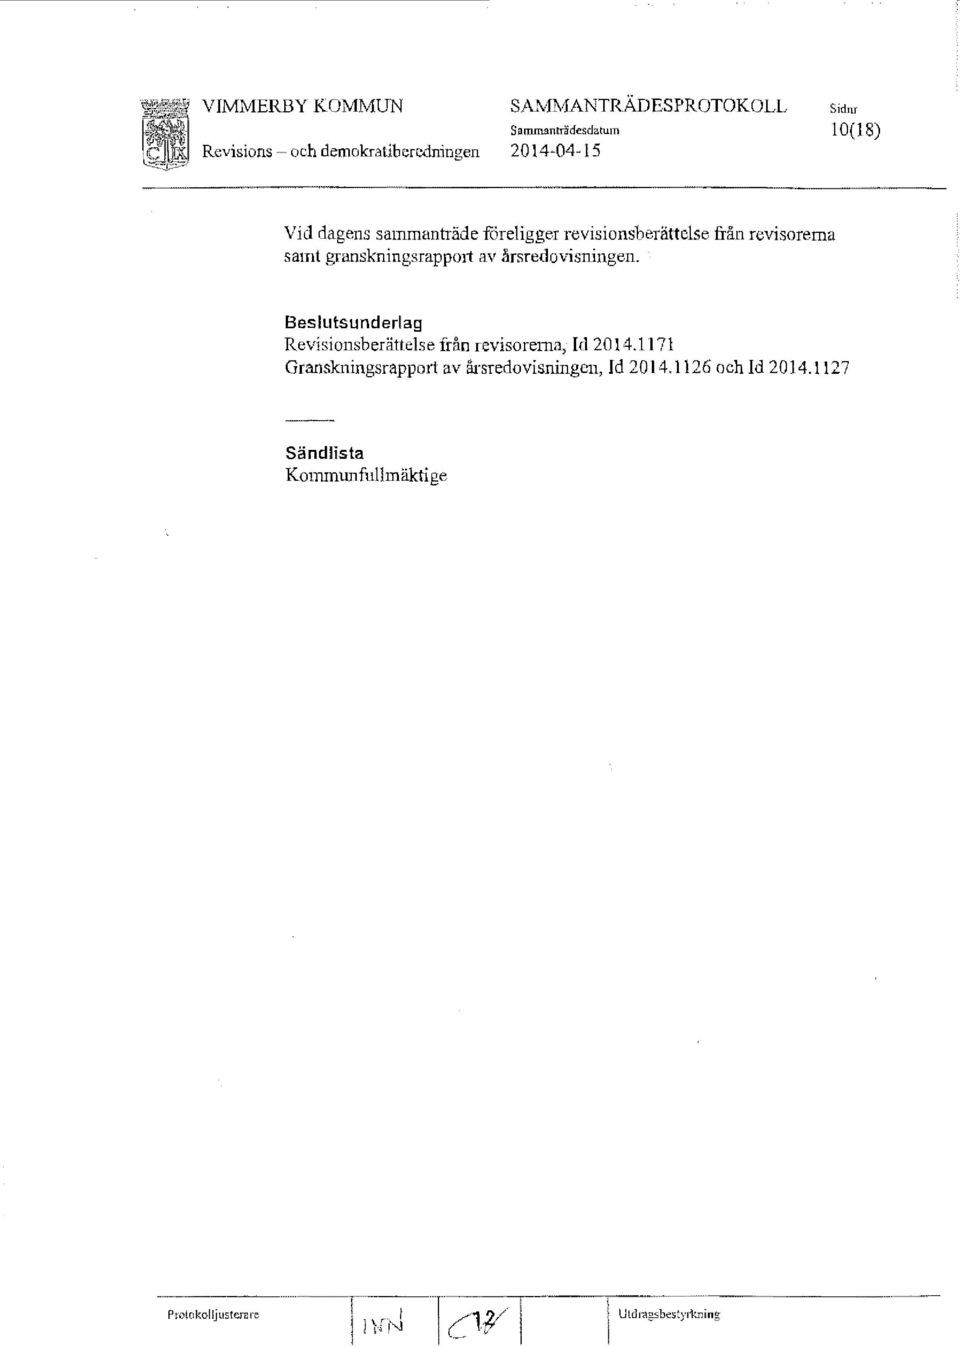 granskningsrappmi av årsredovisningen. Beslutsunderlag Revisionsberättelse från revisorerna, Id 2014.